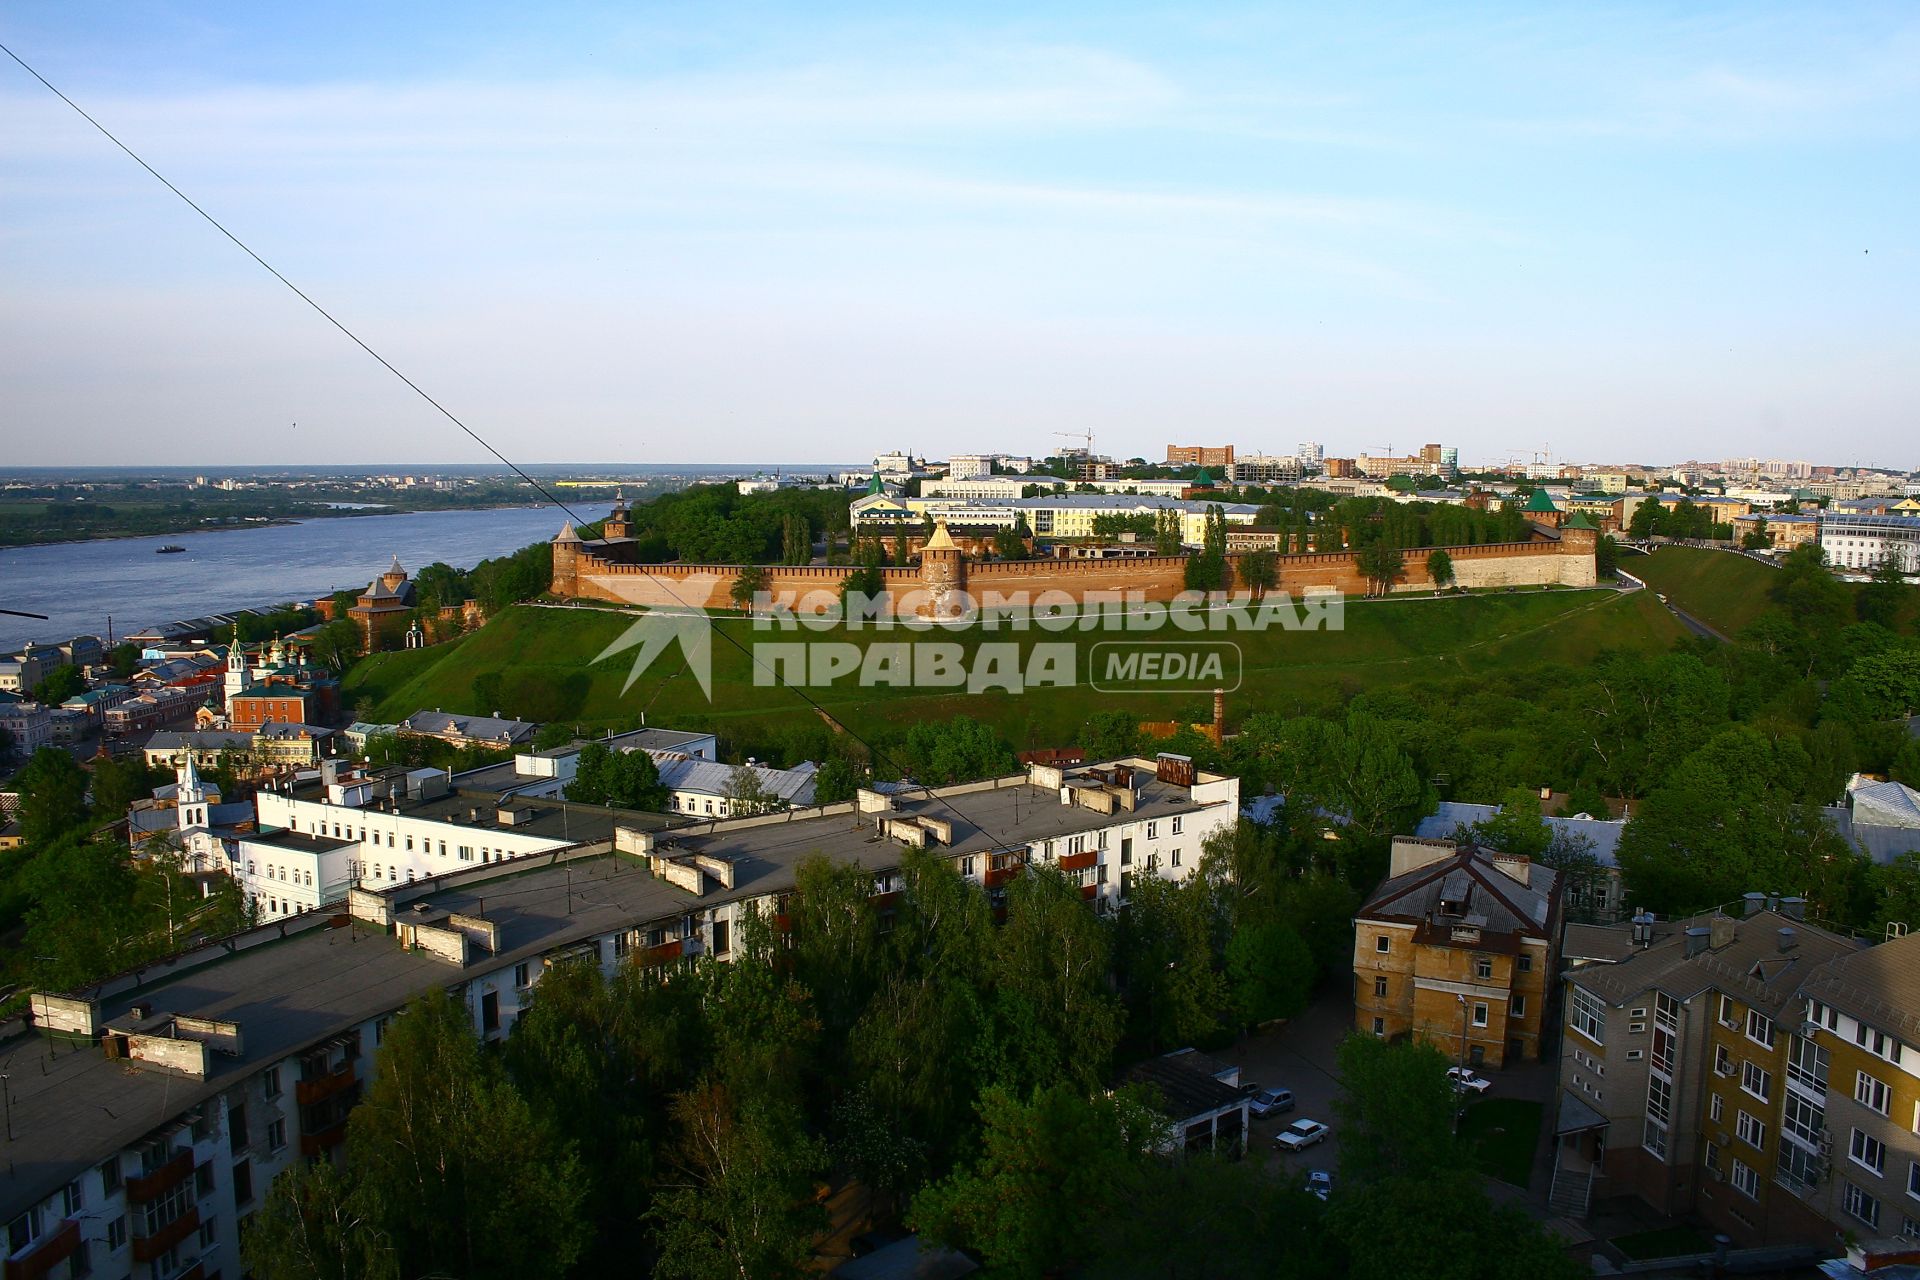 Нижний Новгород.  Вид на Нижегородский кремль (на дальнем плане).